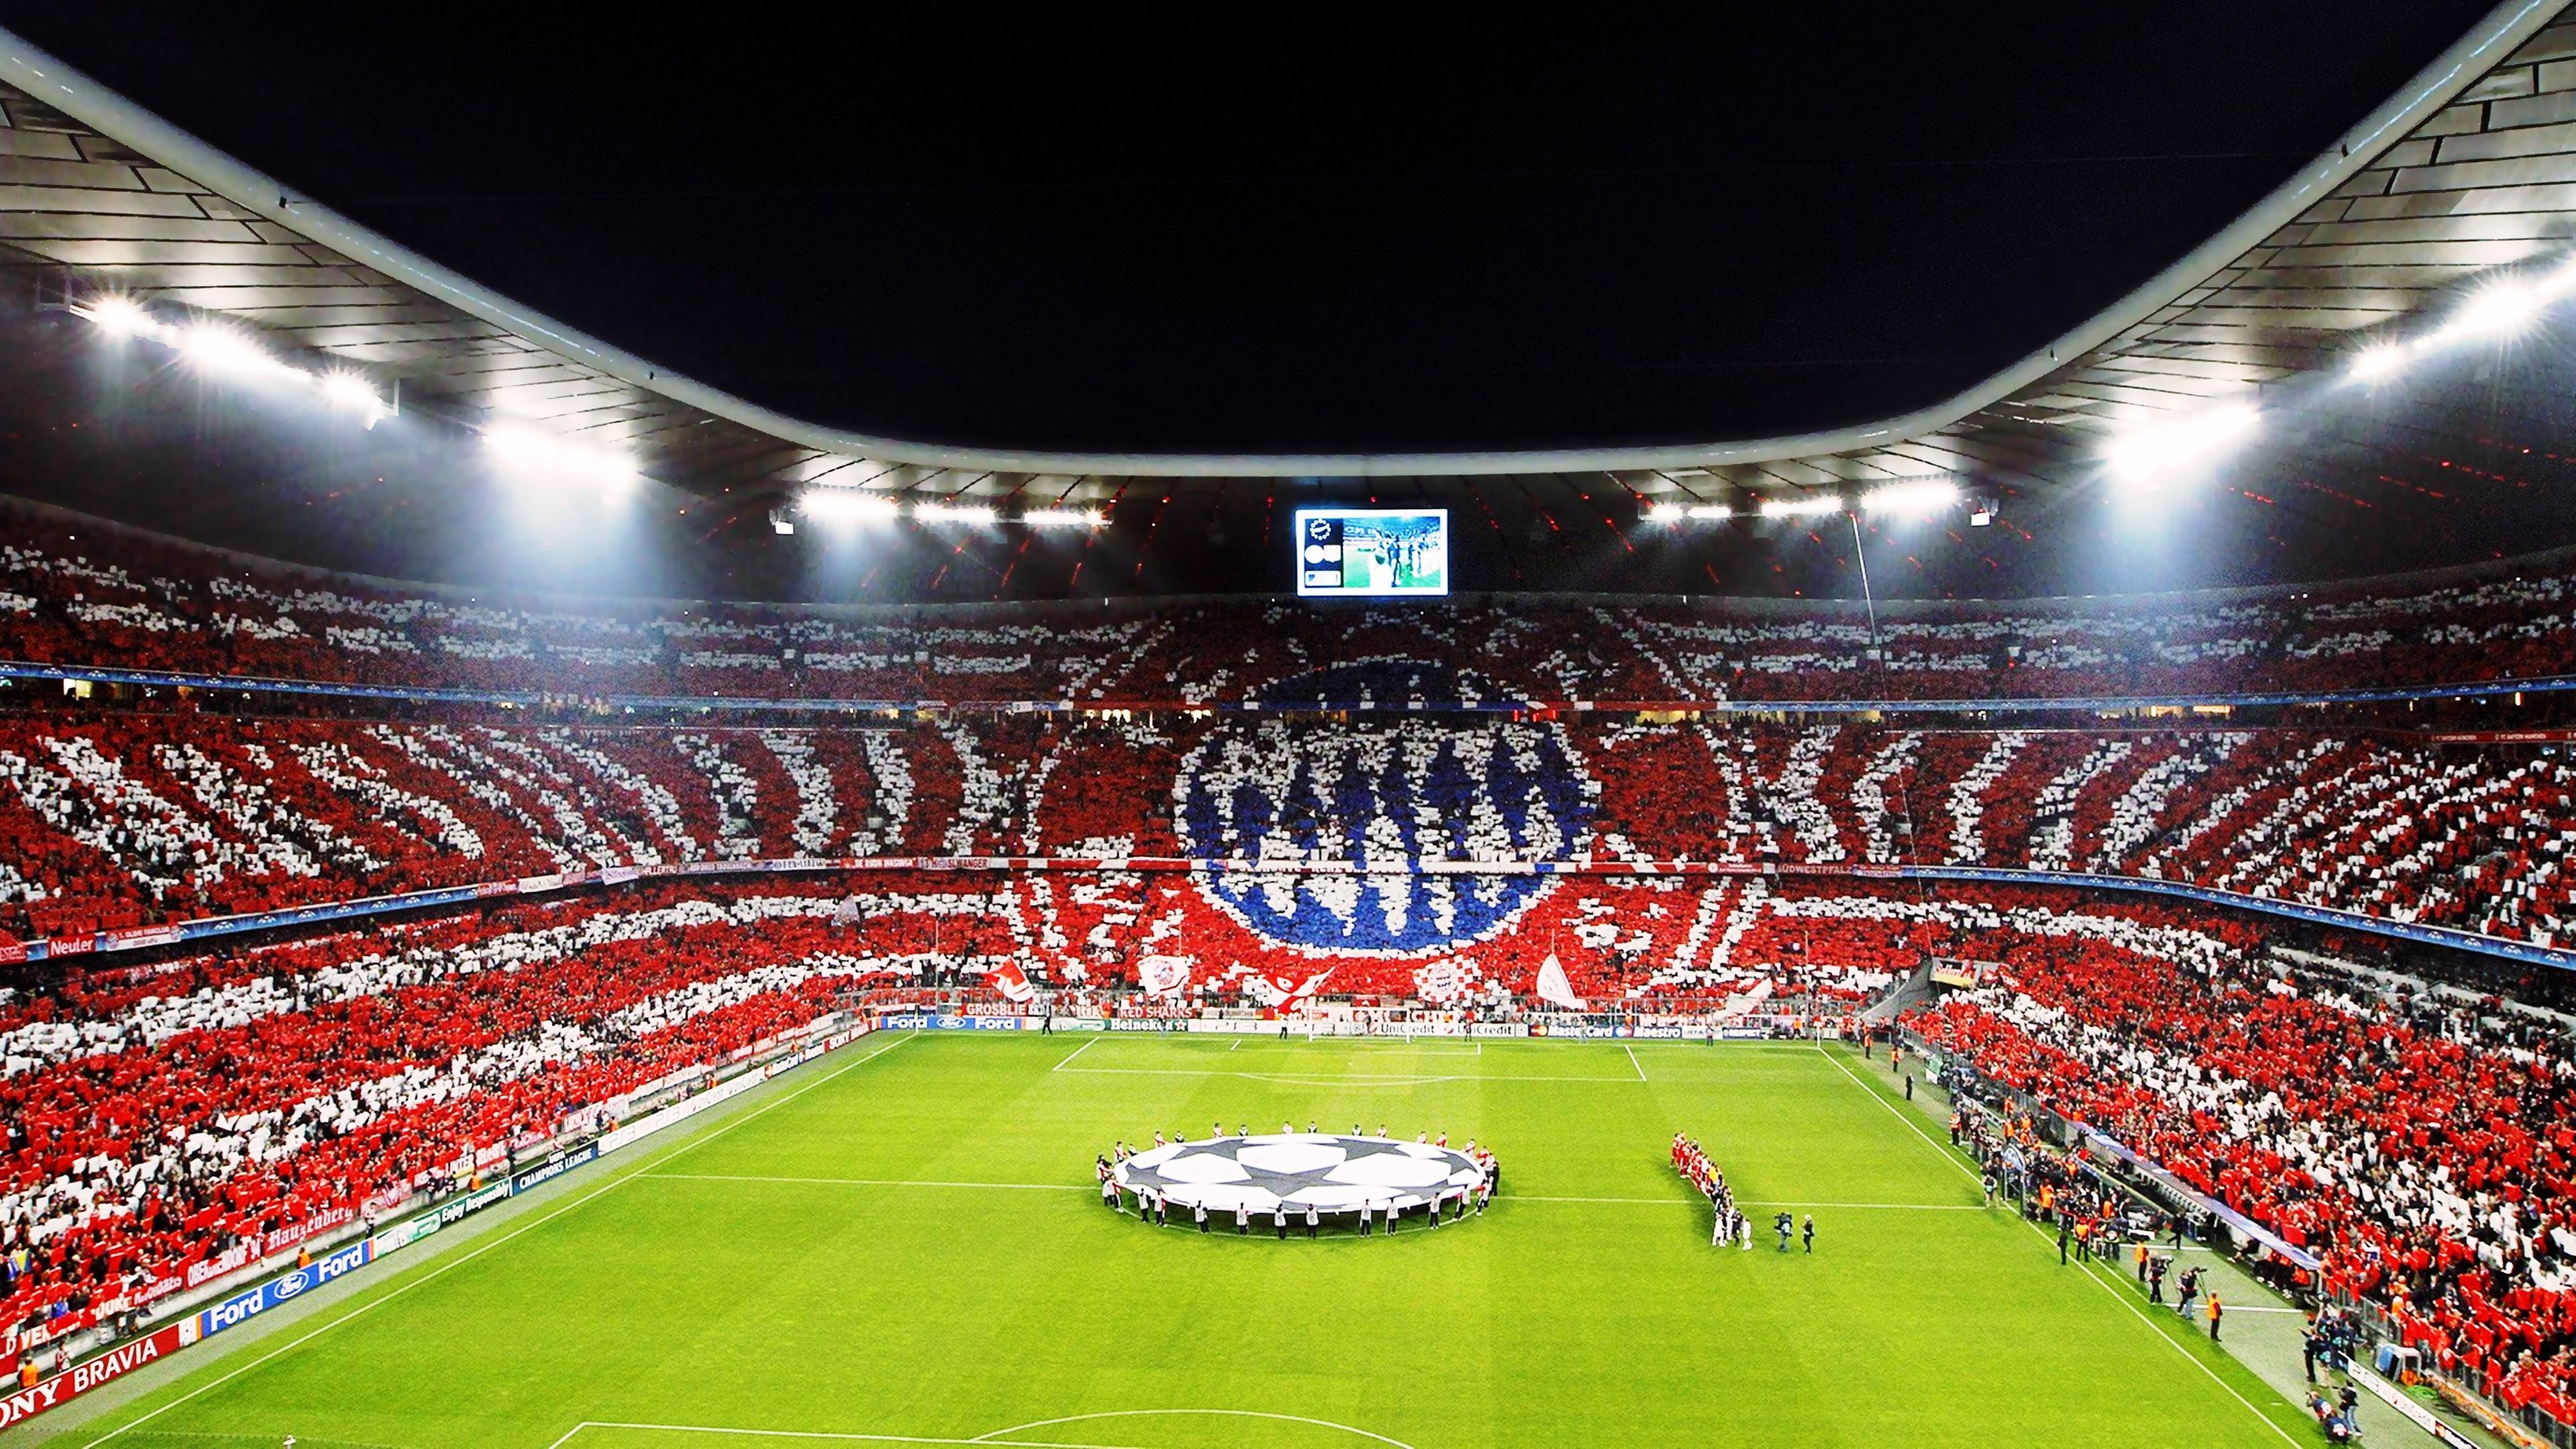 Wallpaper, 3840x2160 px, Allianz Arena, Bayern Munchen, Champions